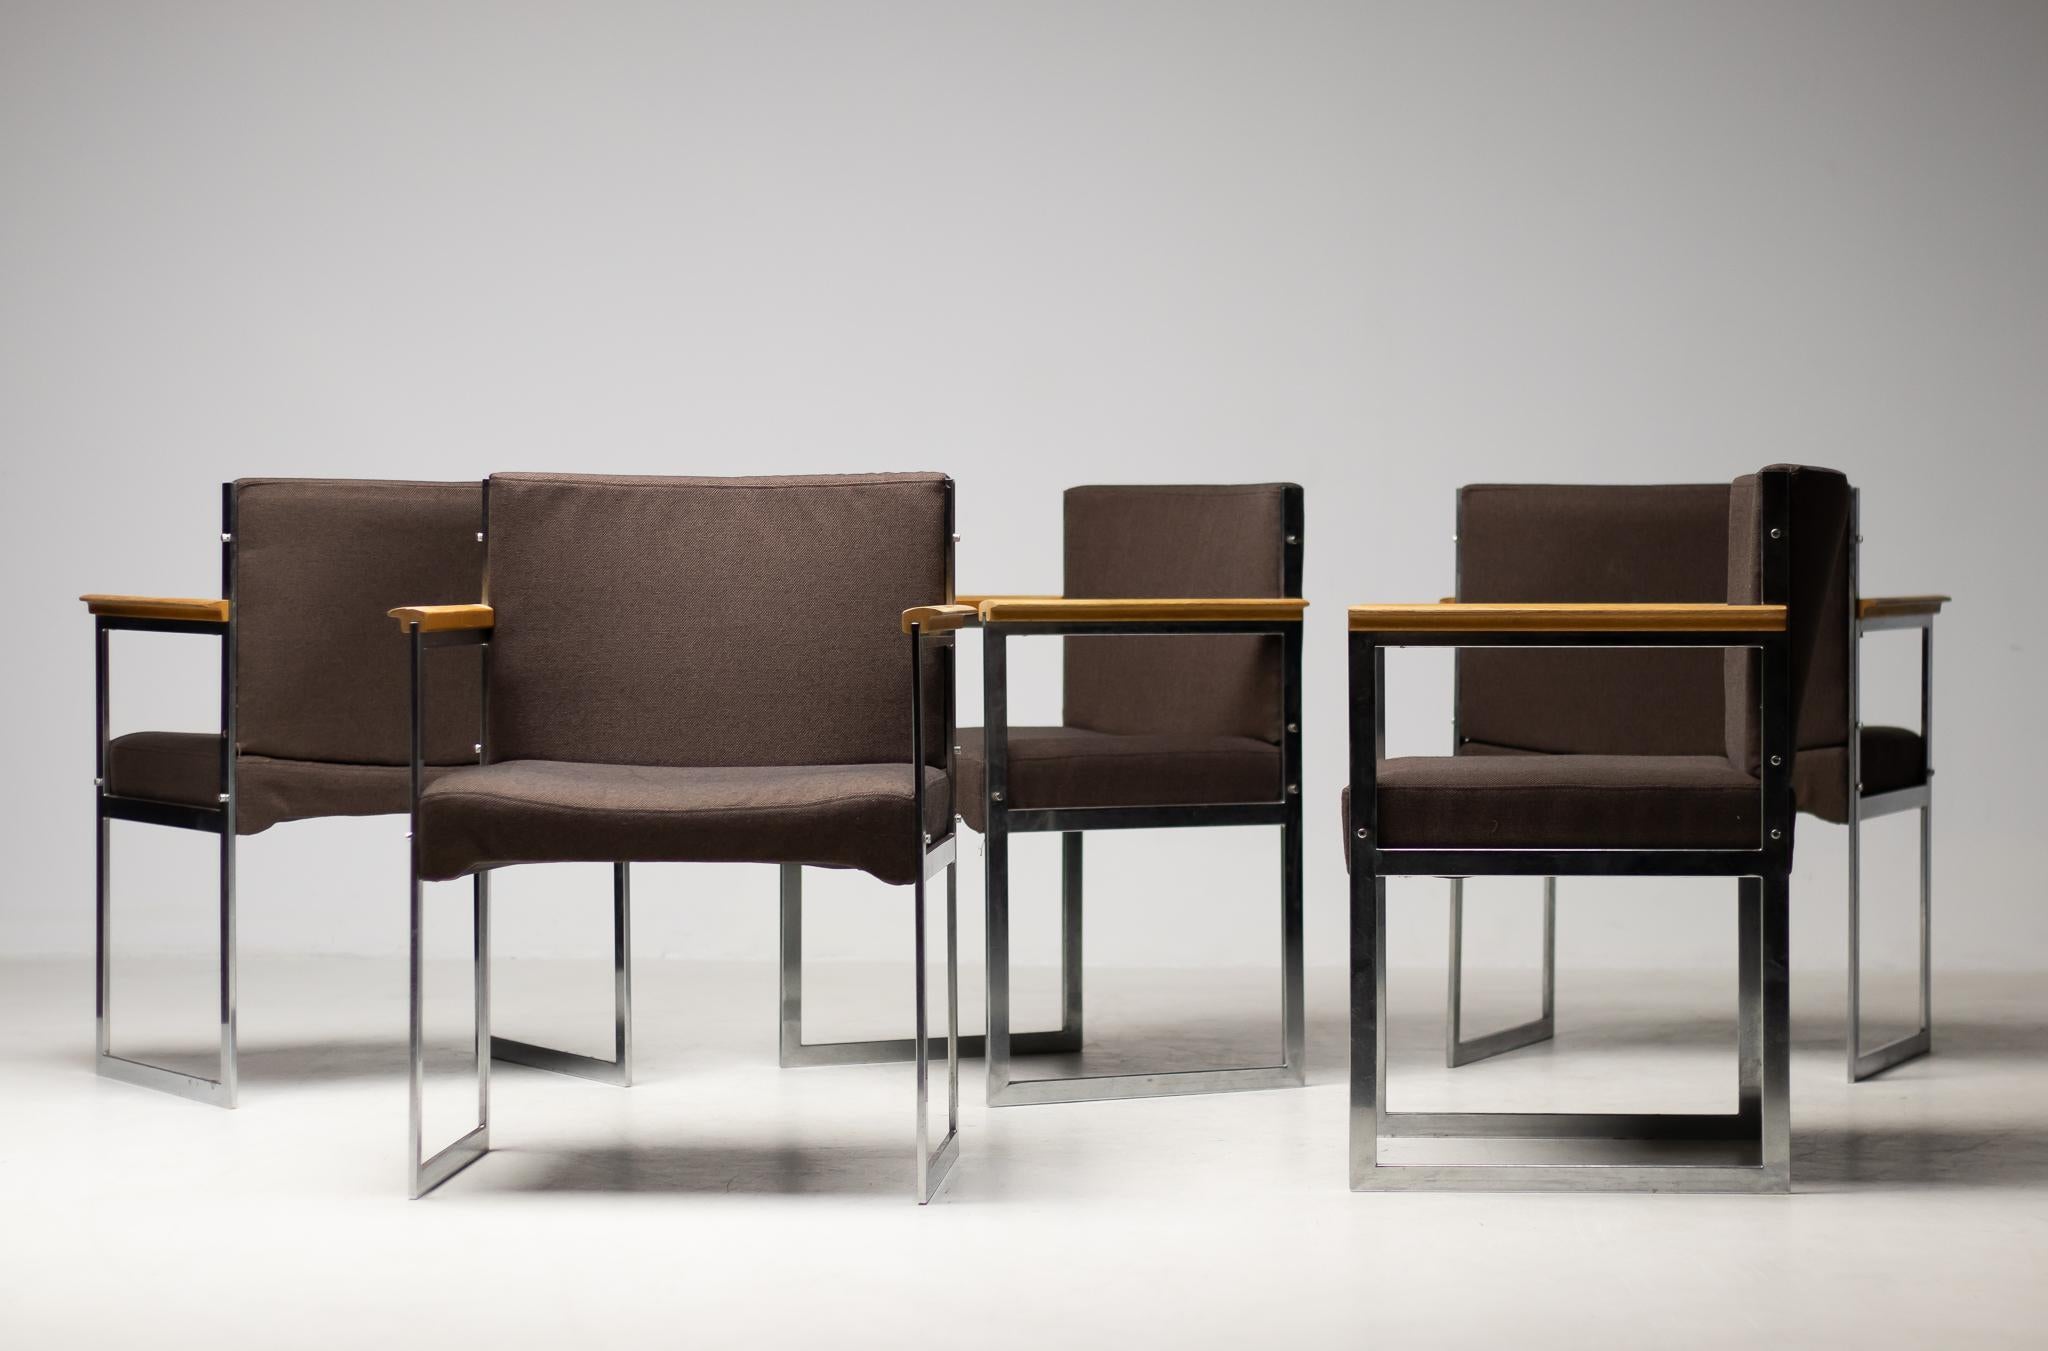 Edle Sessel mit verchromtem Flachstahlgestell und Armlehnen aus Palisanderholz, entworfen von Illum Wikkelsø.
Sitz und Rückenlehne aus brauner Wolle, Neupolsterung auf Anfrage möglich.
Es sind fünf Stühle erhältlich, die einzeln berechnet